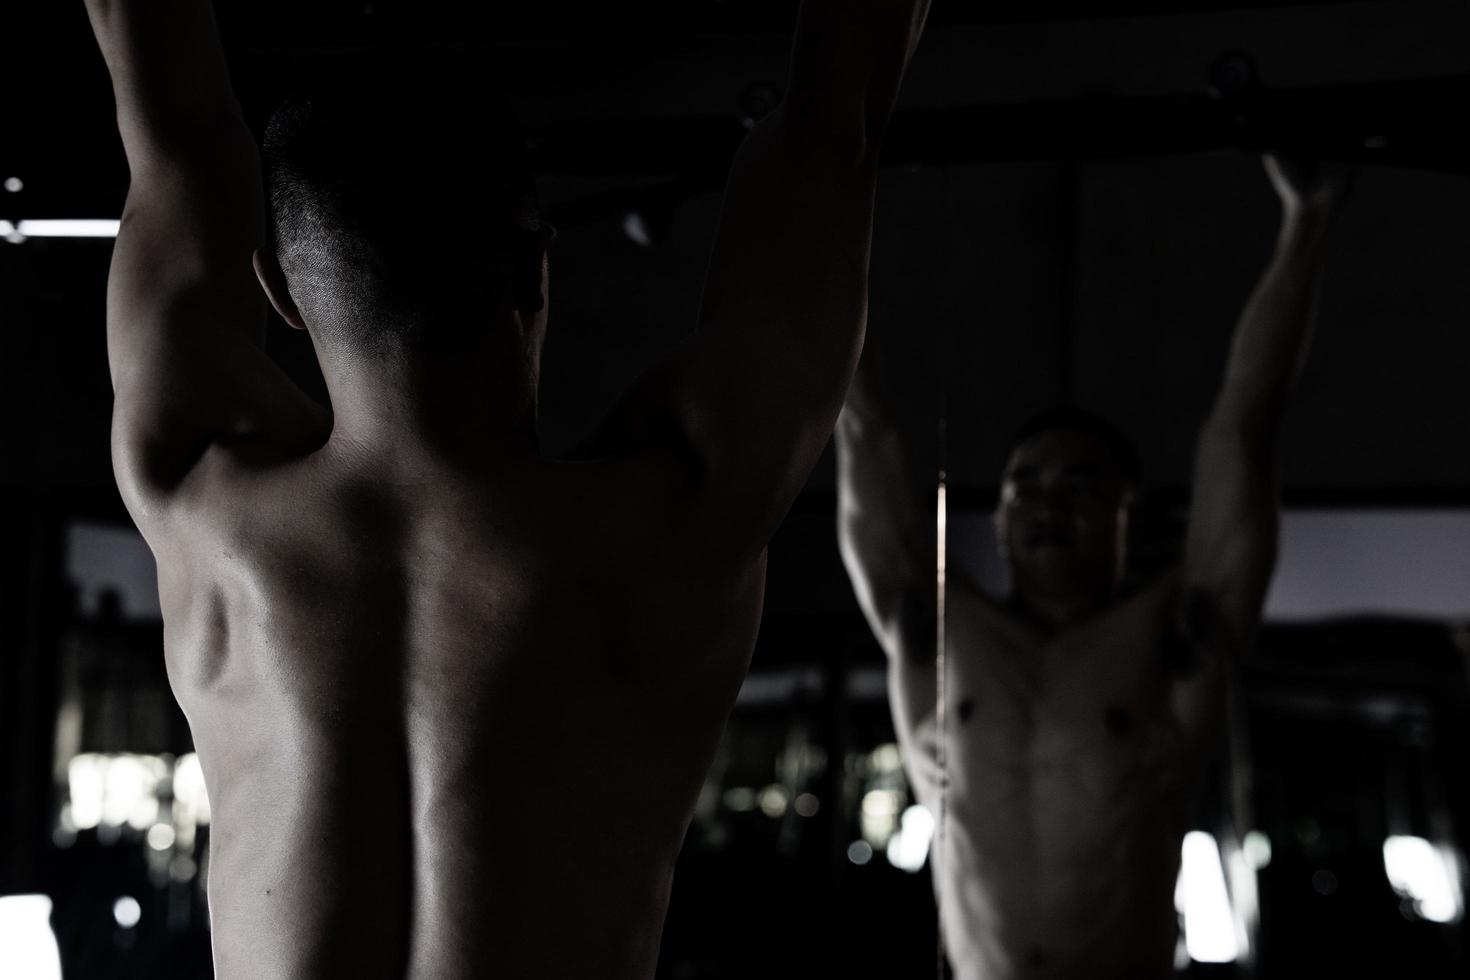 sexy Körper von muskulös jung Soldat asiatisch Mann im Fitnessstudio. Konzept von Gesundheit Pflege, Übung Fitness, stark Muskel Masse, Körper Erweiterung, Fett die Ermäßigung zum Herren Gesundheit Ergänzung Produkt Präsentation. foto